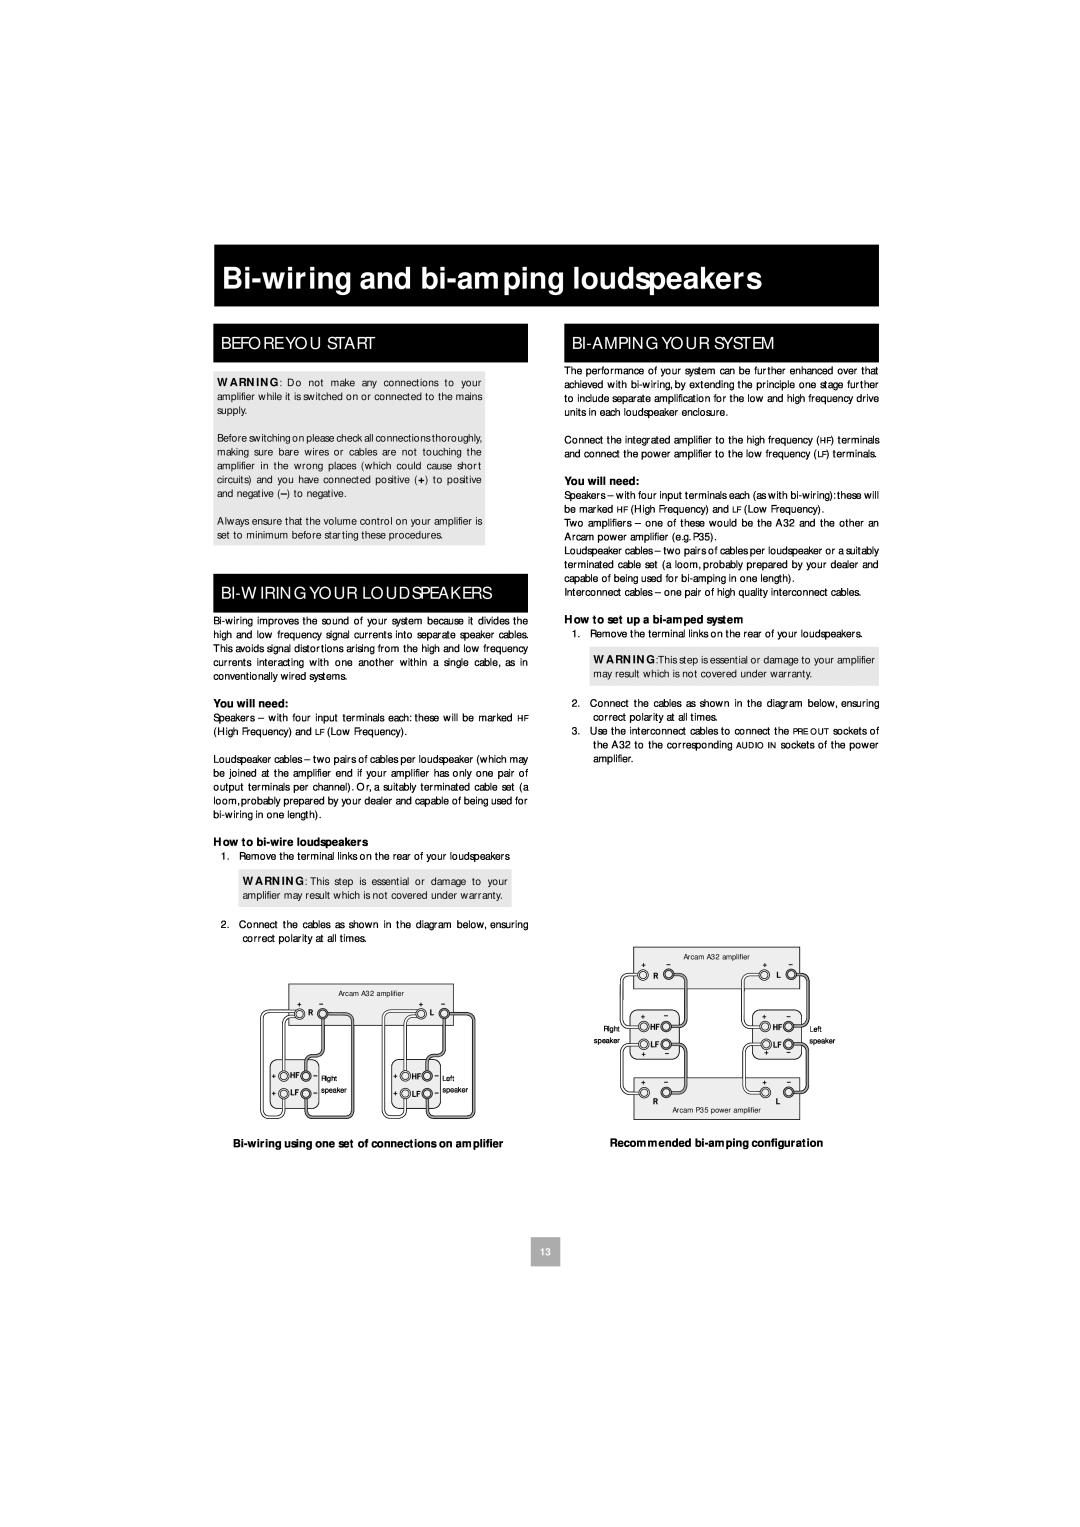 Arcam A32 manual Bi-wiringand bi-ampingloudspeakers, Before You Start, Bi-Wiringyour Loudspeakers, Bi-Ampingyour System 